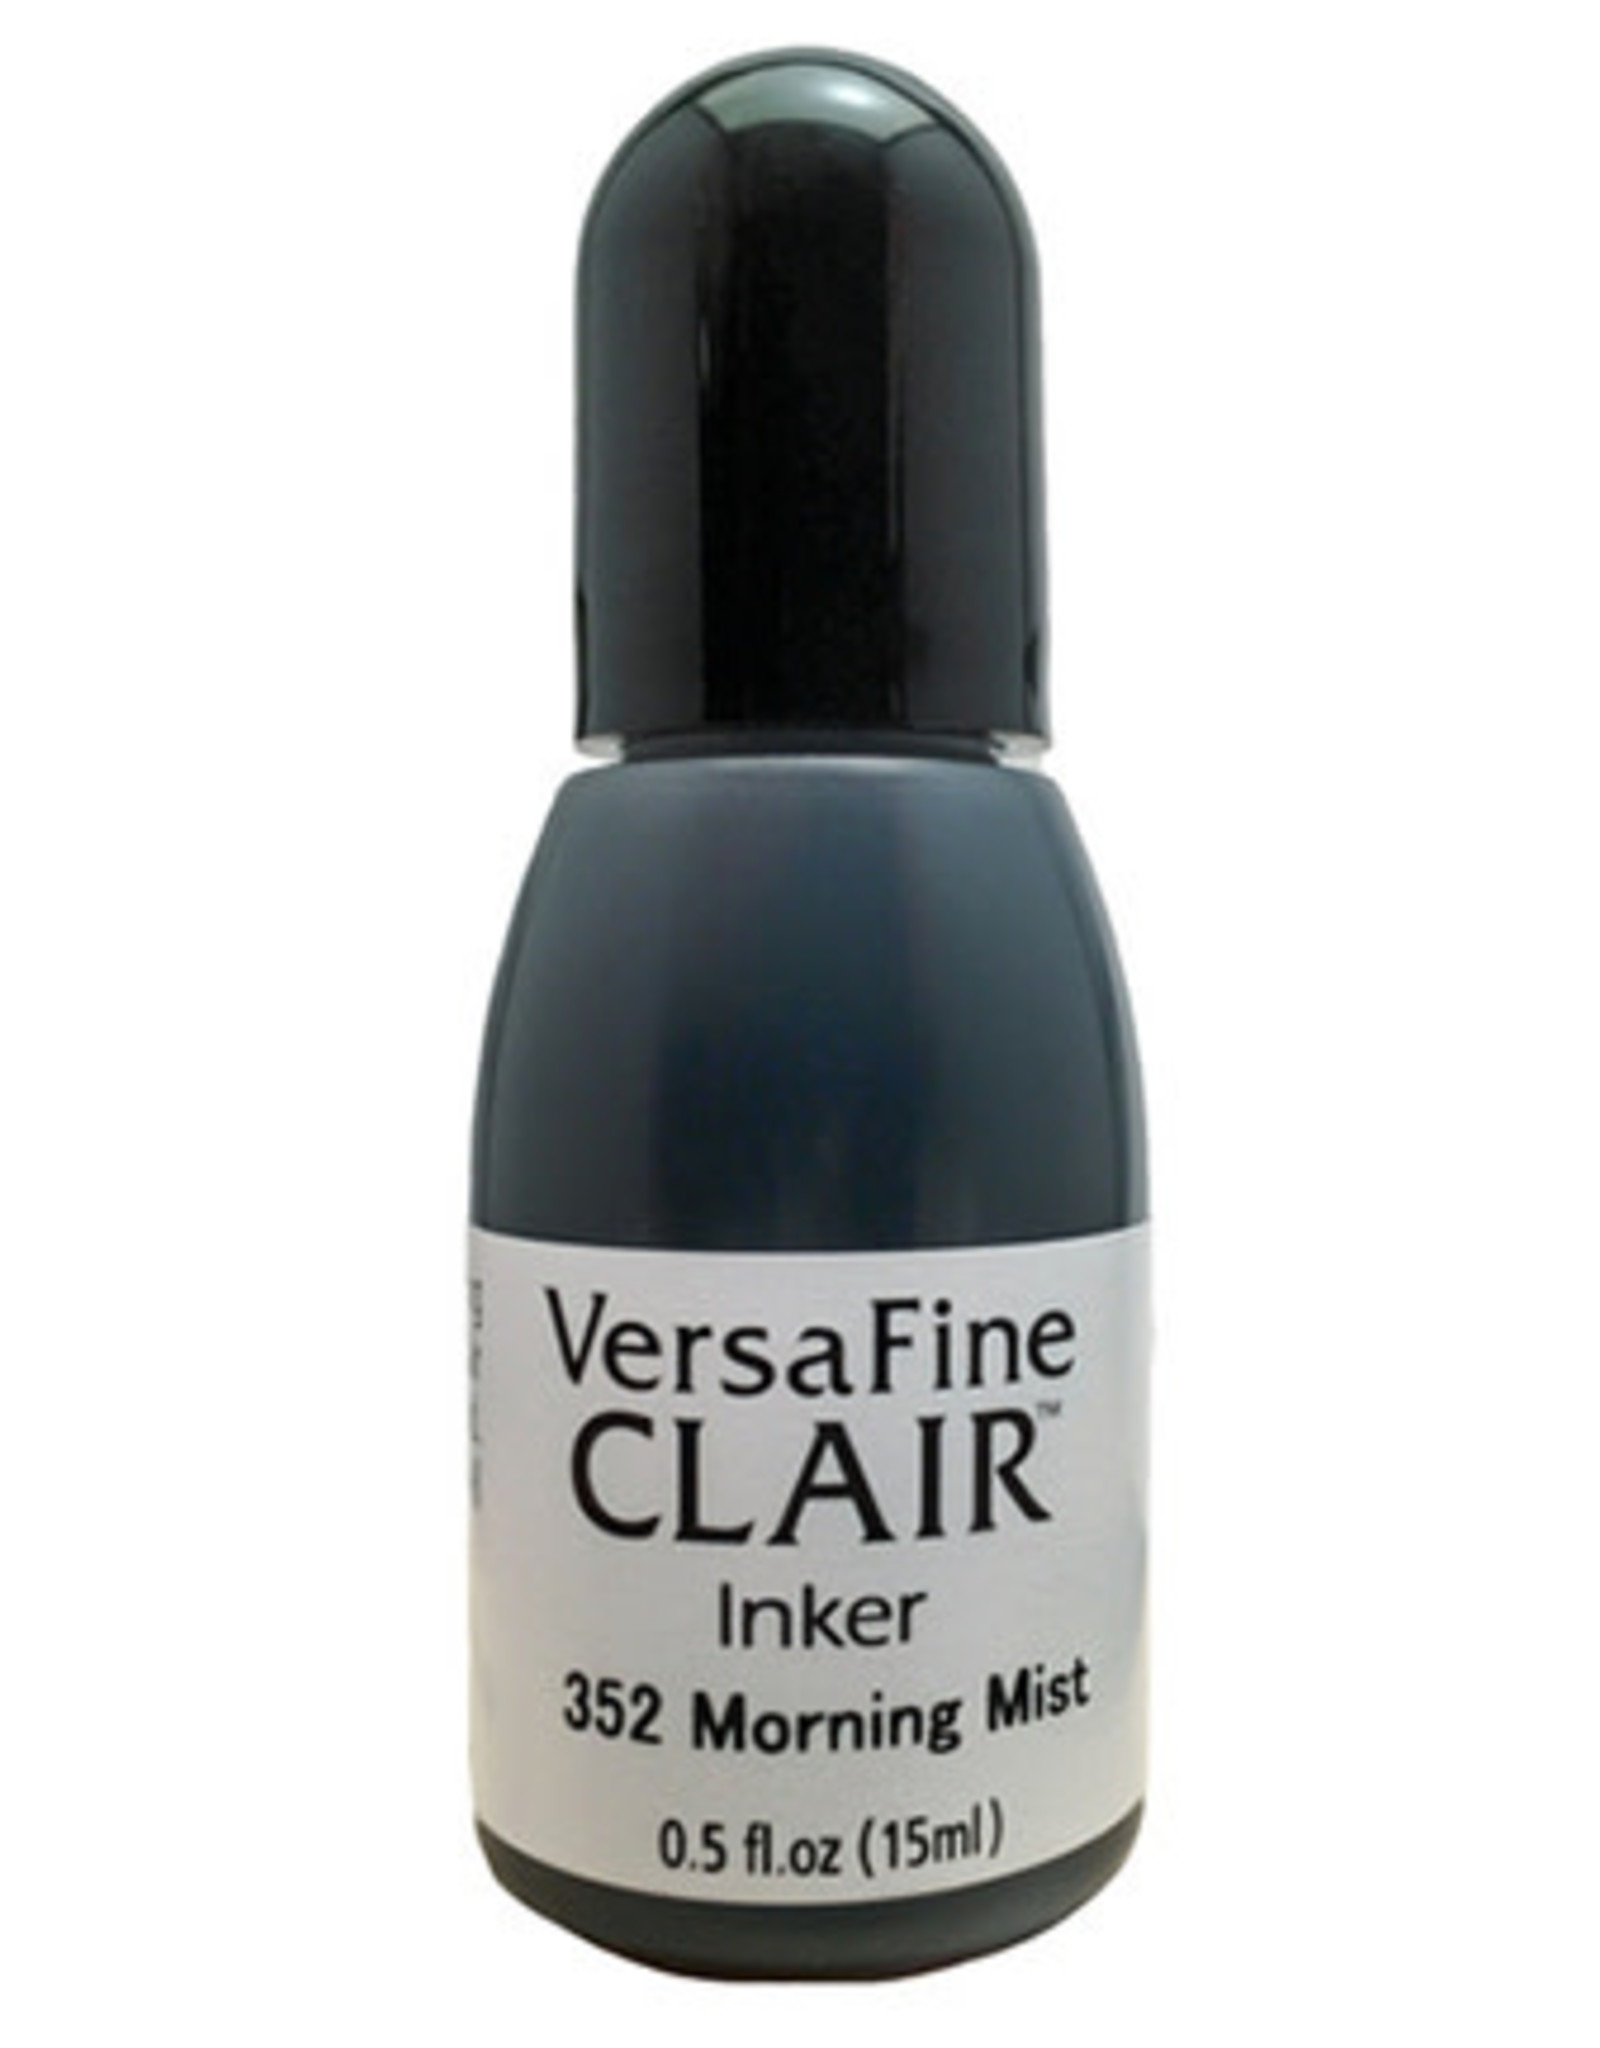 Versafine claire VersaFine Clair Inker  Morning Mist